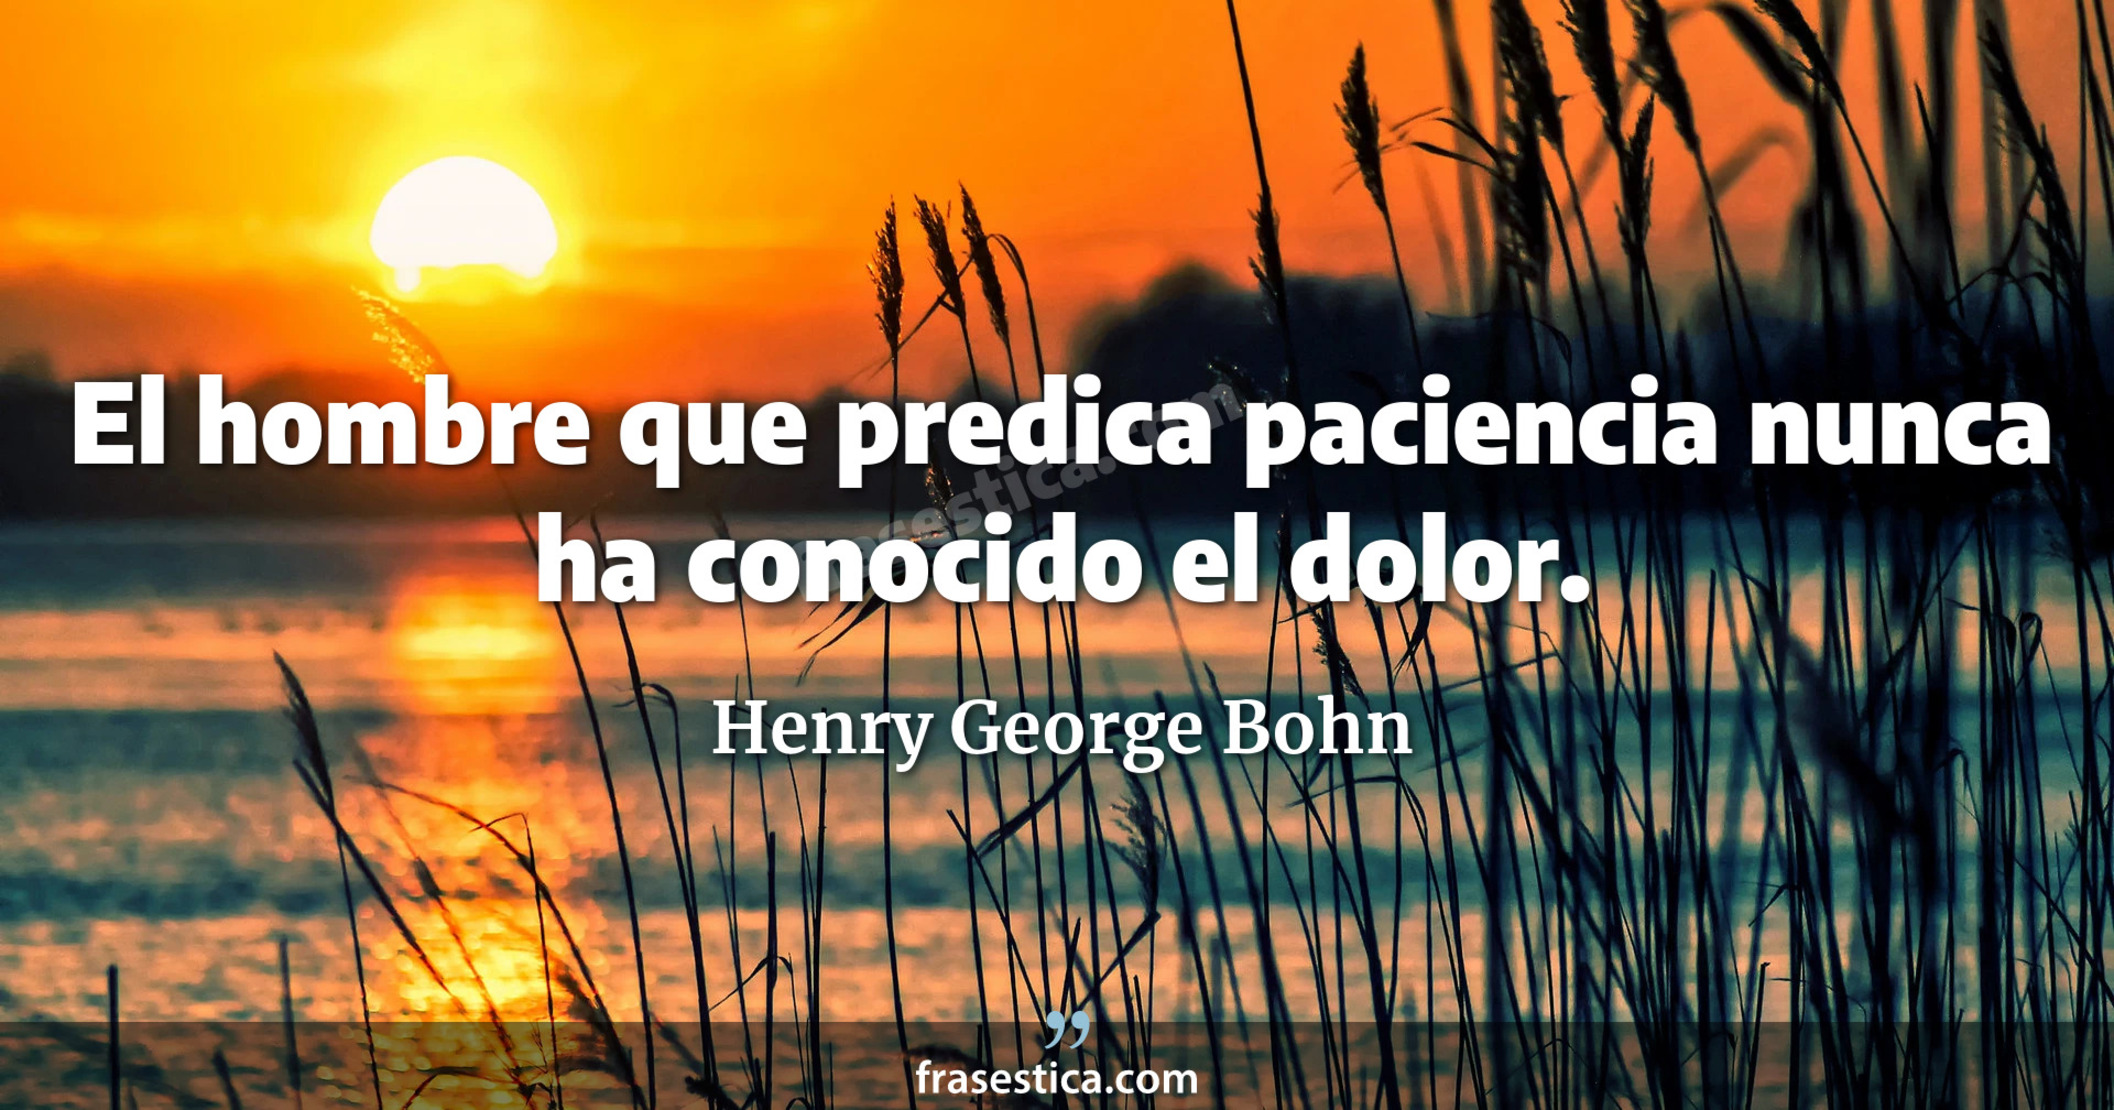 El hombre que predica paciencia nunca ha conocido el dolor. - Henry George Bohn